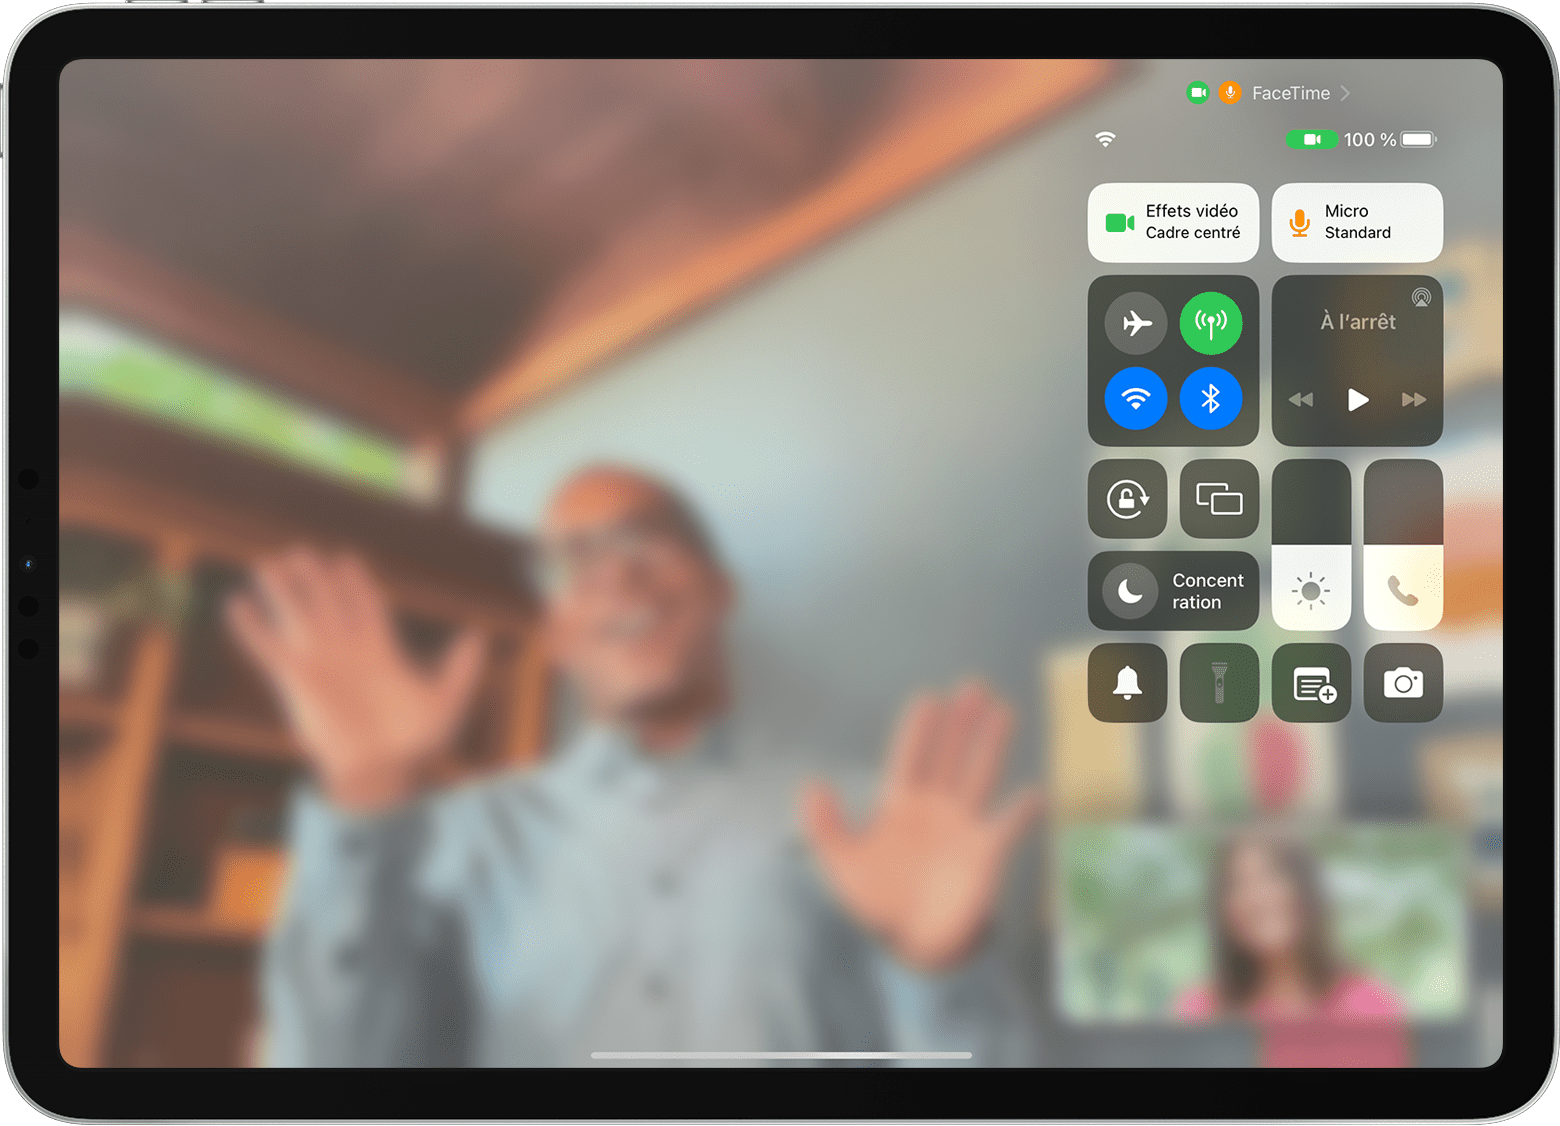 L’écran de l’iPad affiche un appel FaceTime avec le centre de contrôle visible, y compris le bouton Effets vidéo.